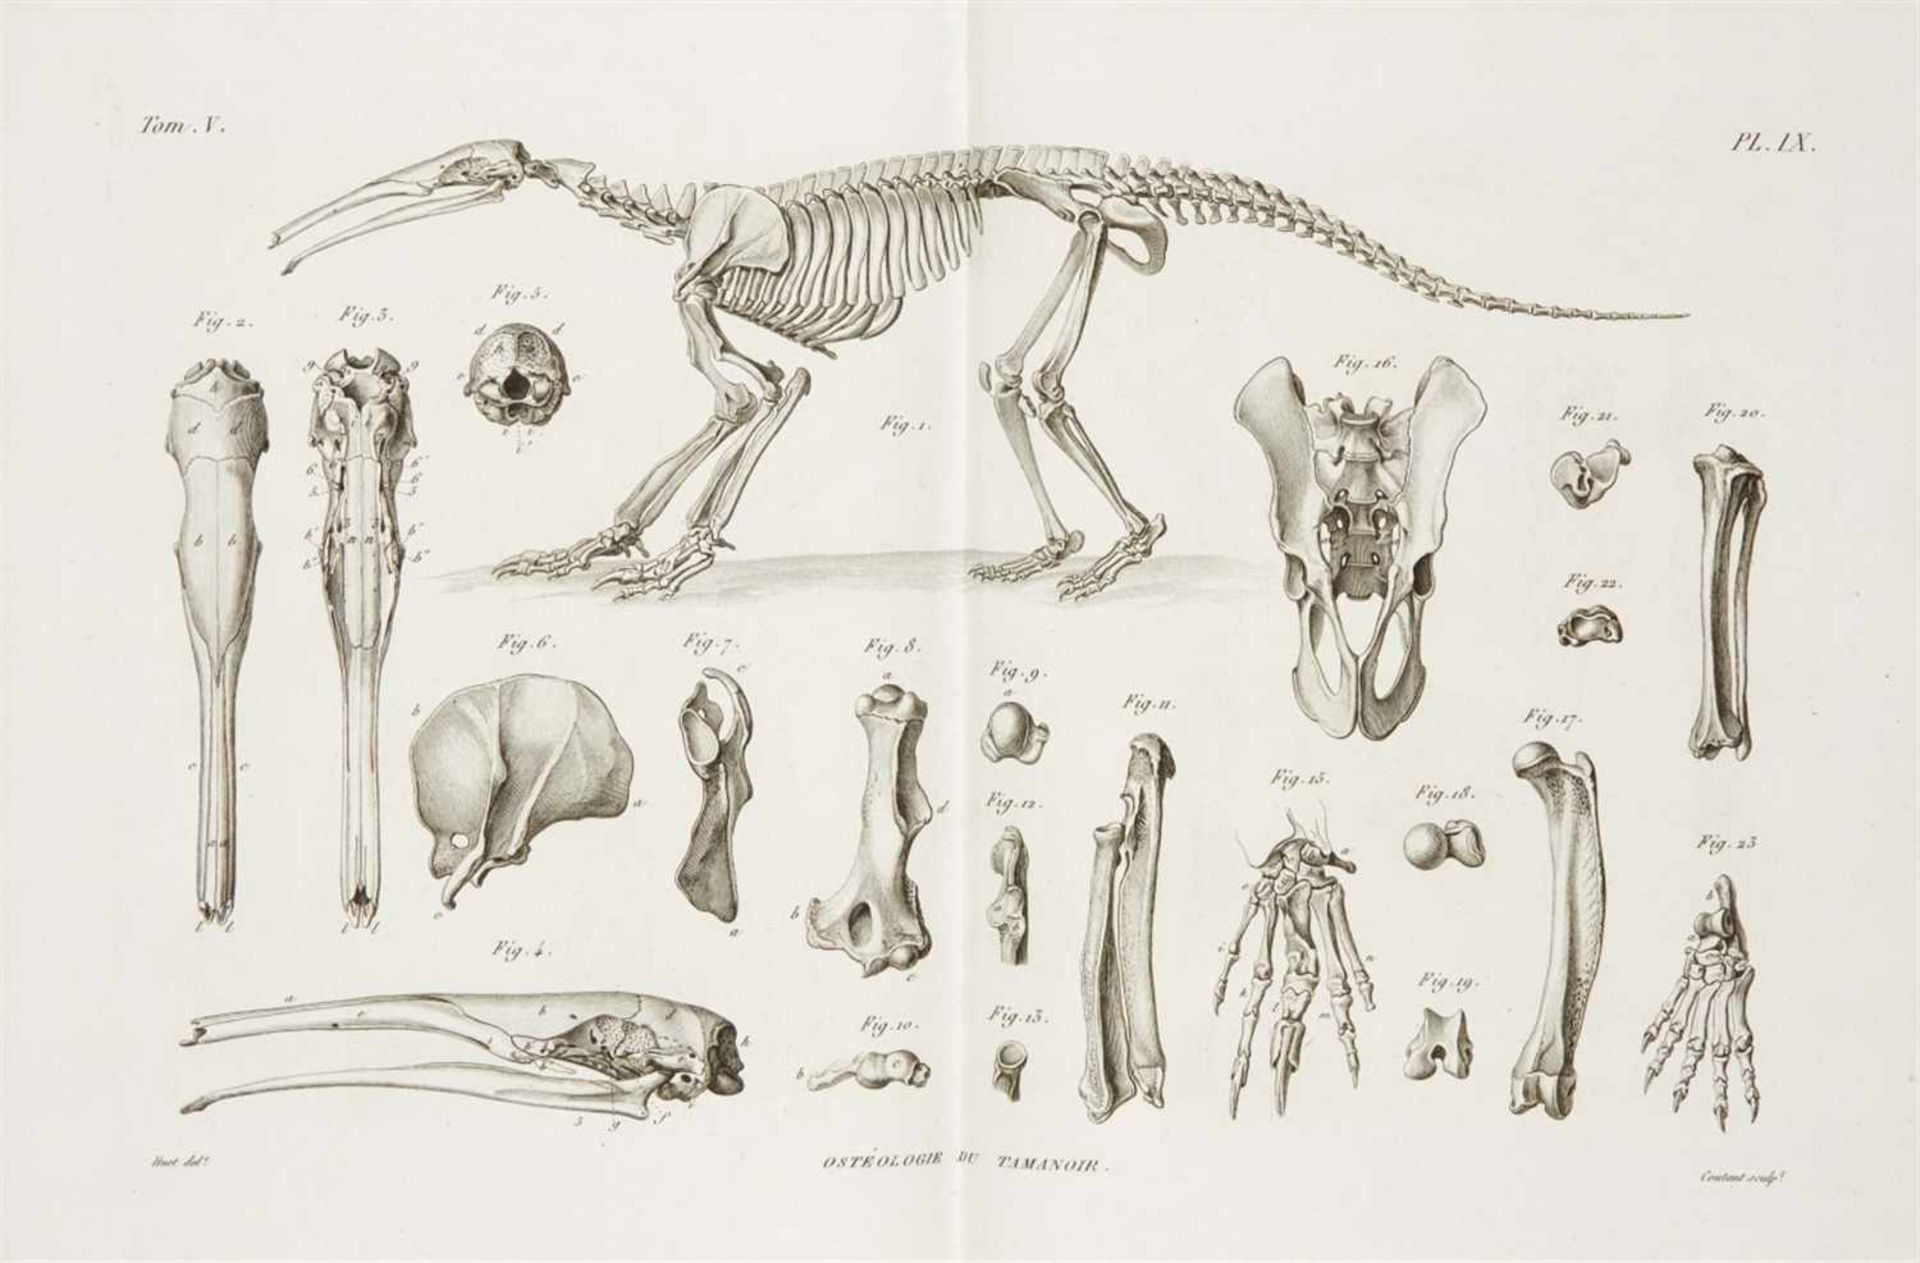 Cuvier, George Baron de: Recherches sur les ossemens fossiles, où l'on rétablit les caractères de